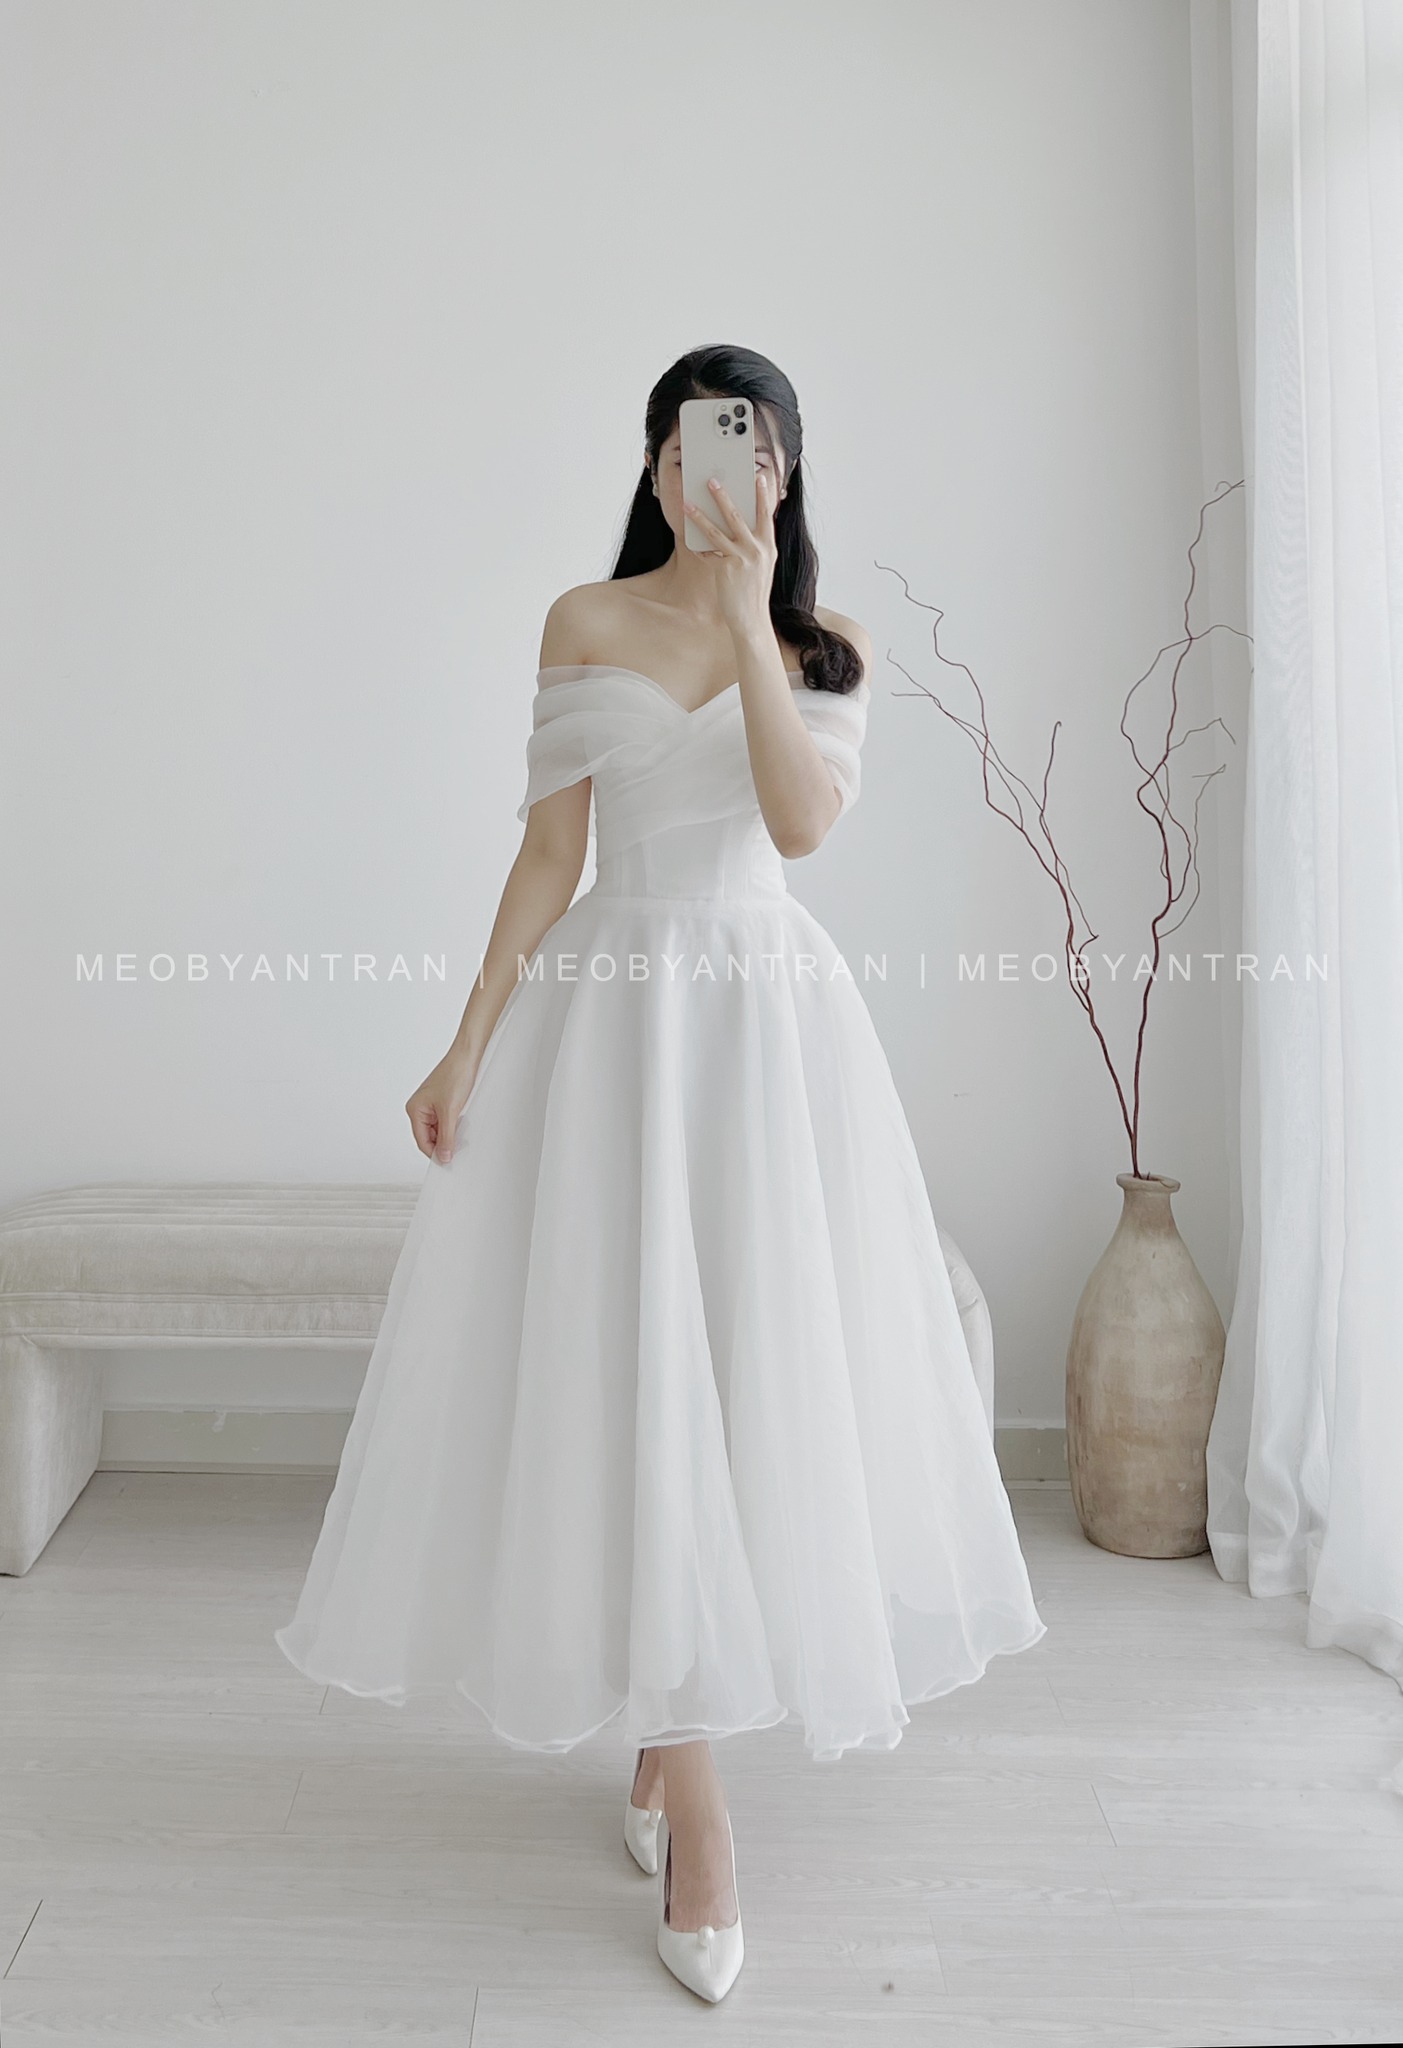 Váy cưới ngắn dễ thương chất liệu voan nhẹ nhàng #1104